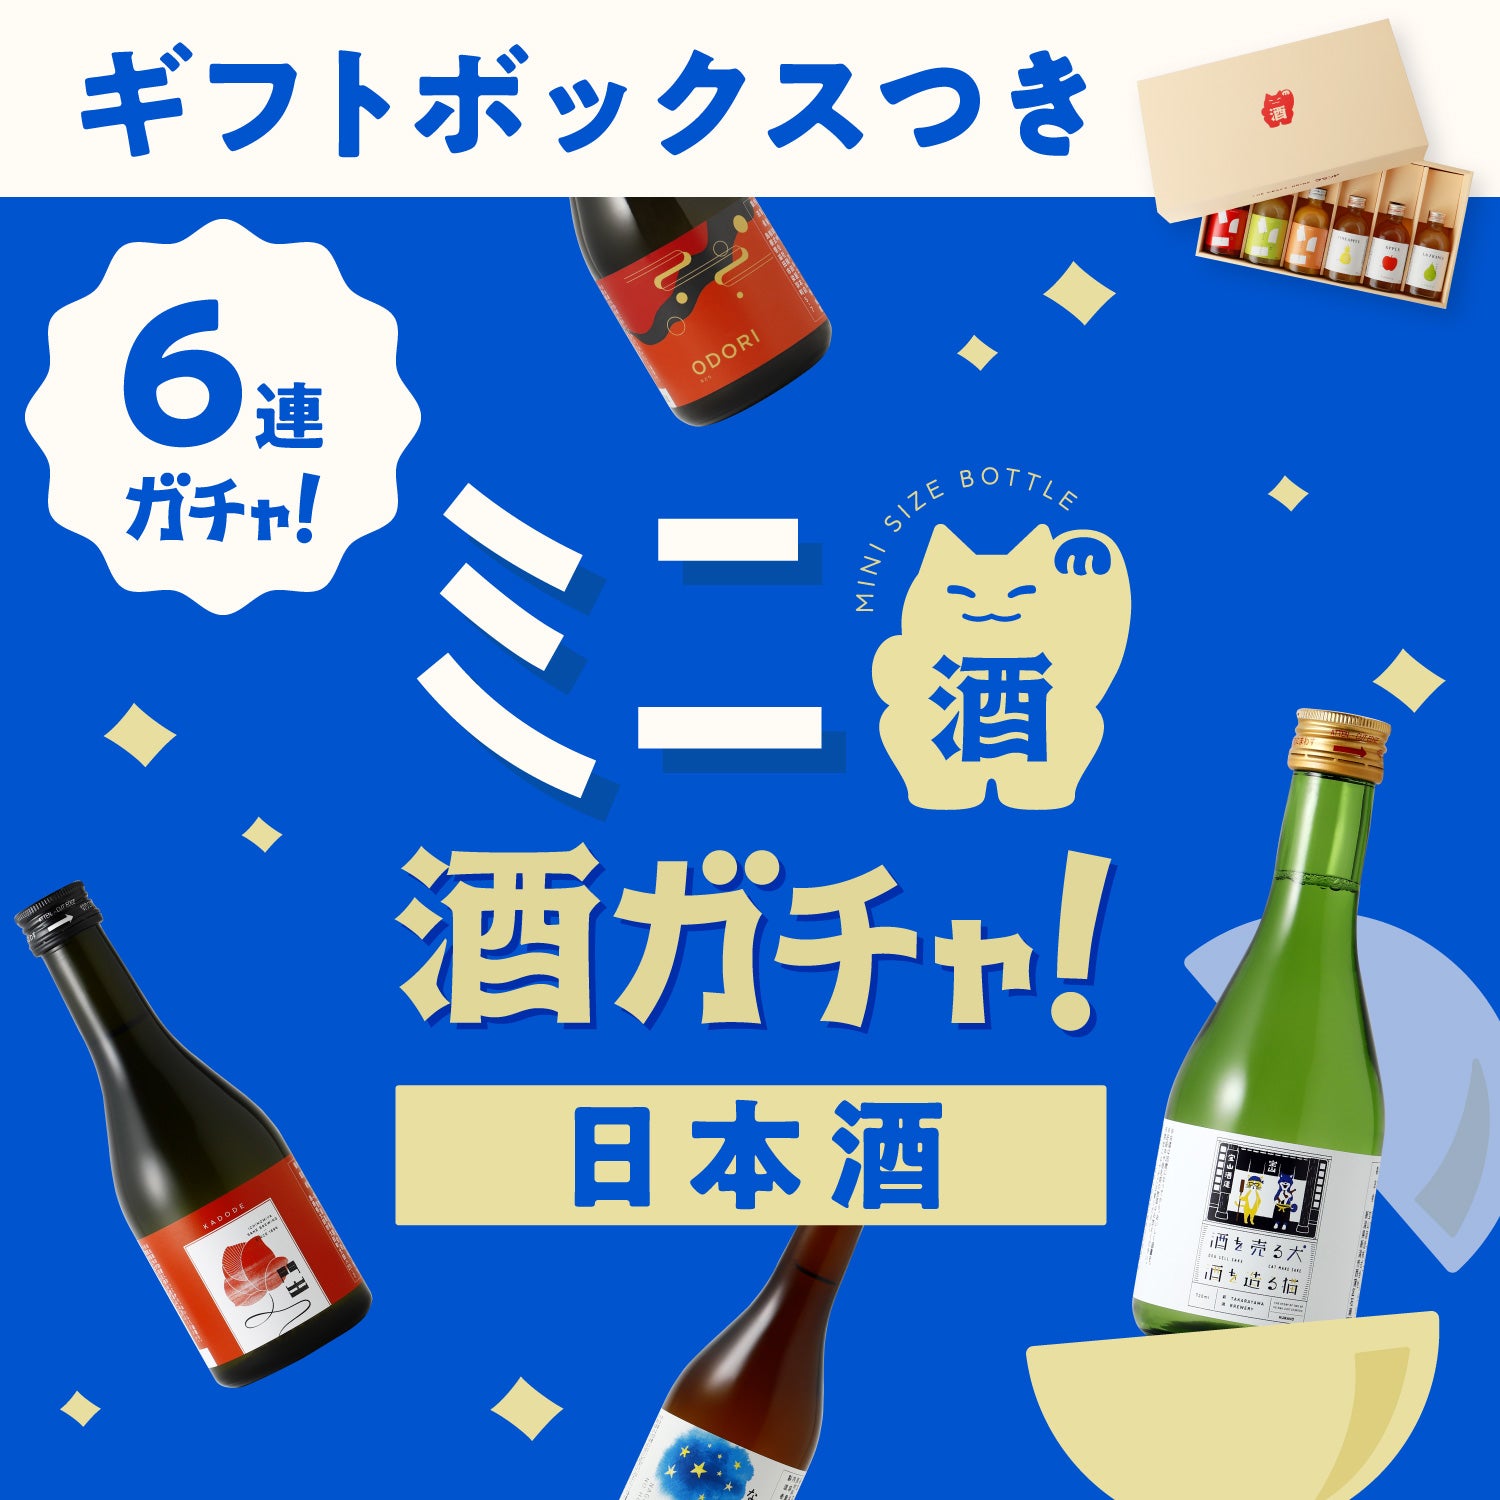 【ギフトボックス付き】ミニ6連酒ガチャ -日本酒-